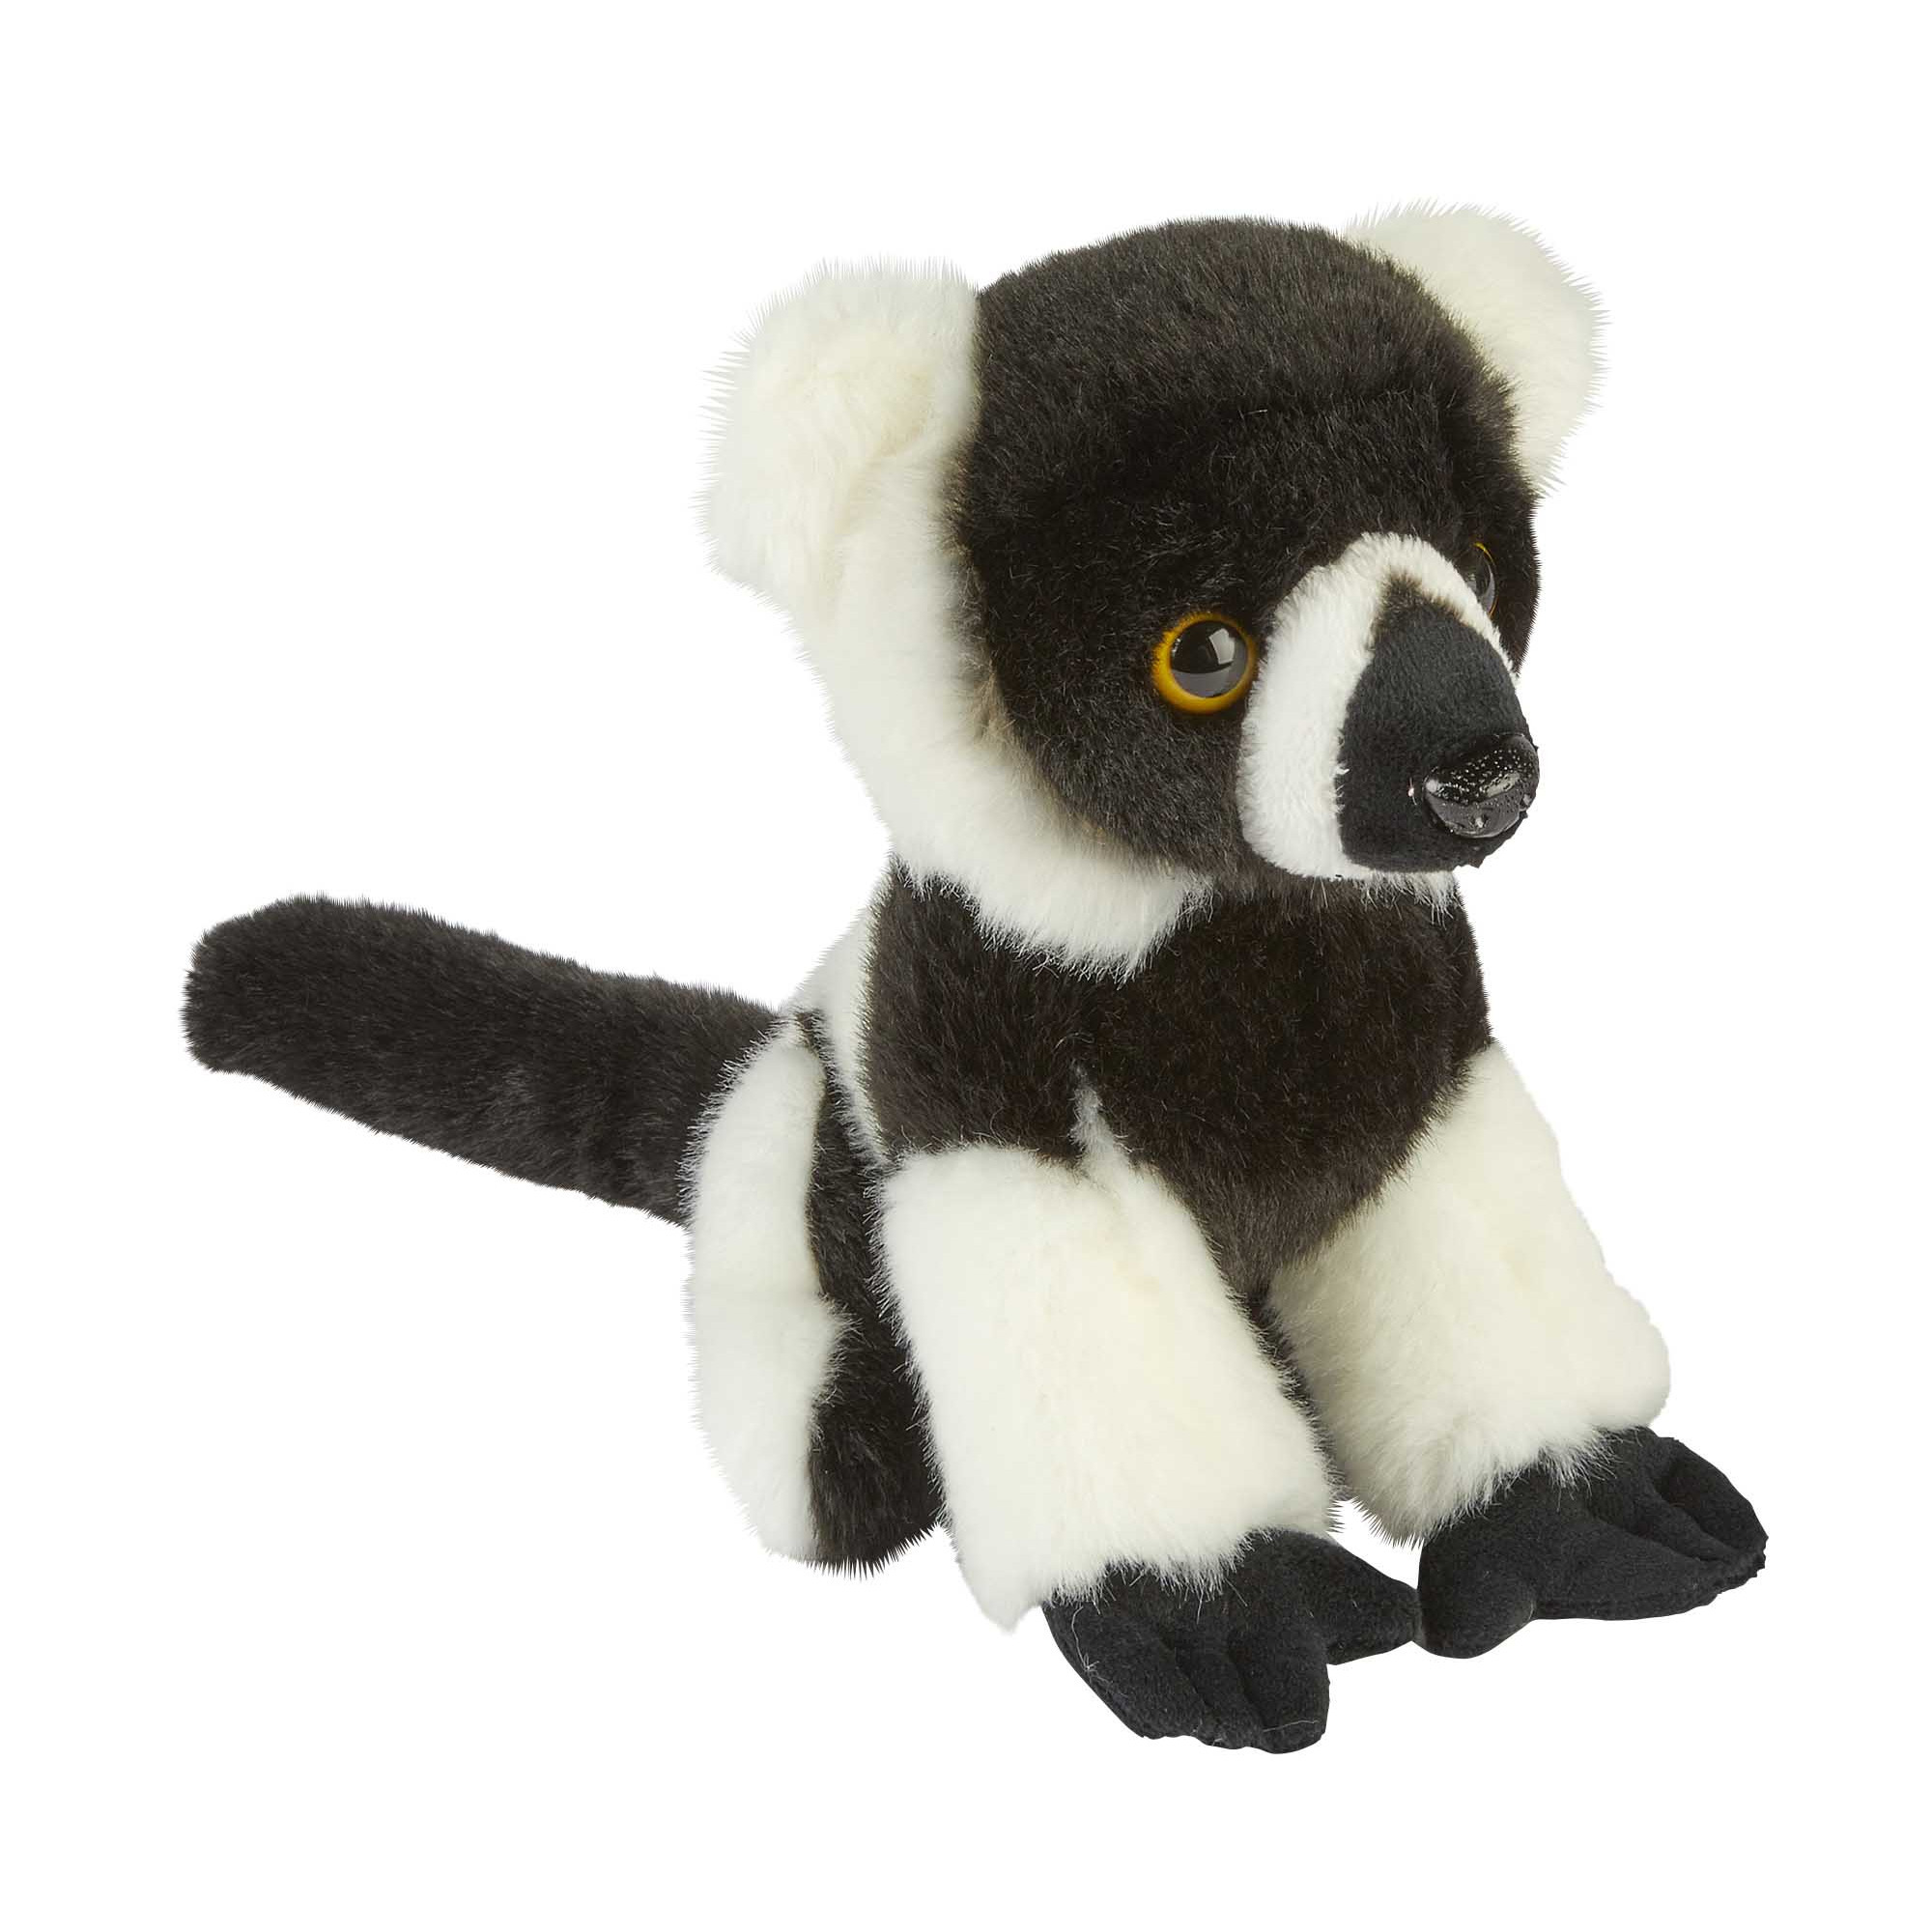 Pluche knuffel dieren zwart/wit Lemur aapje 18 cm